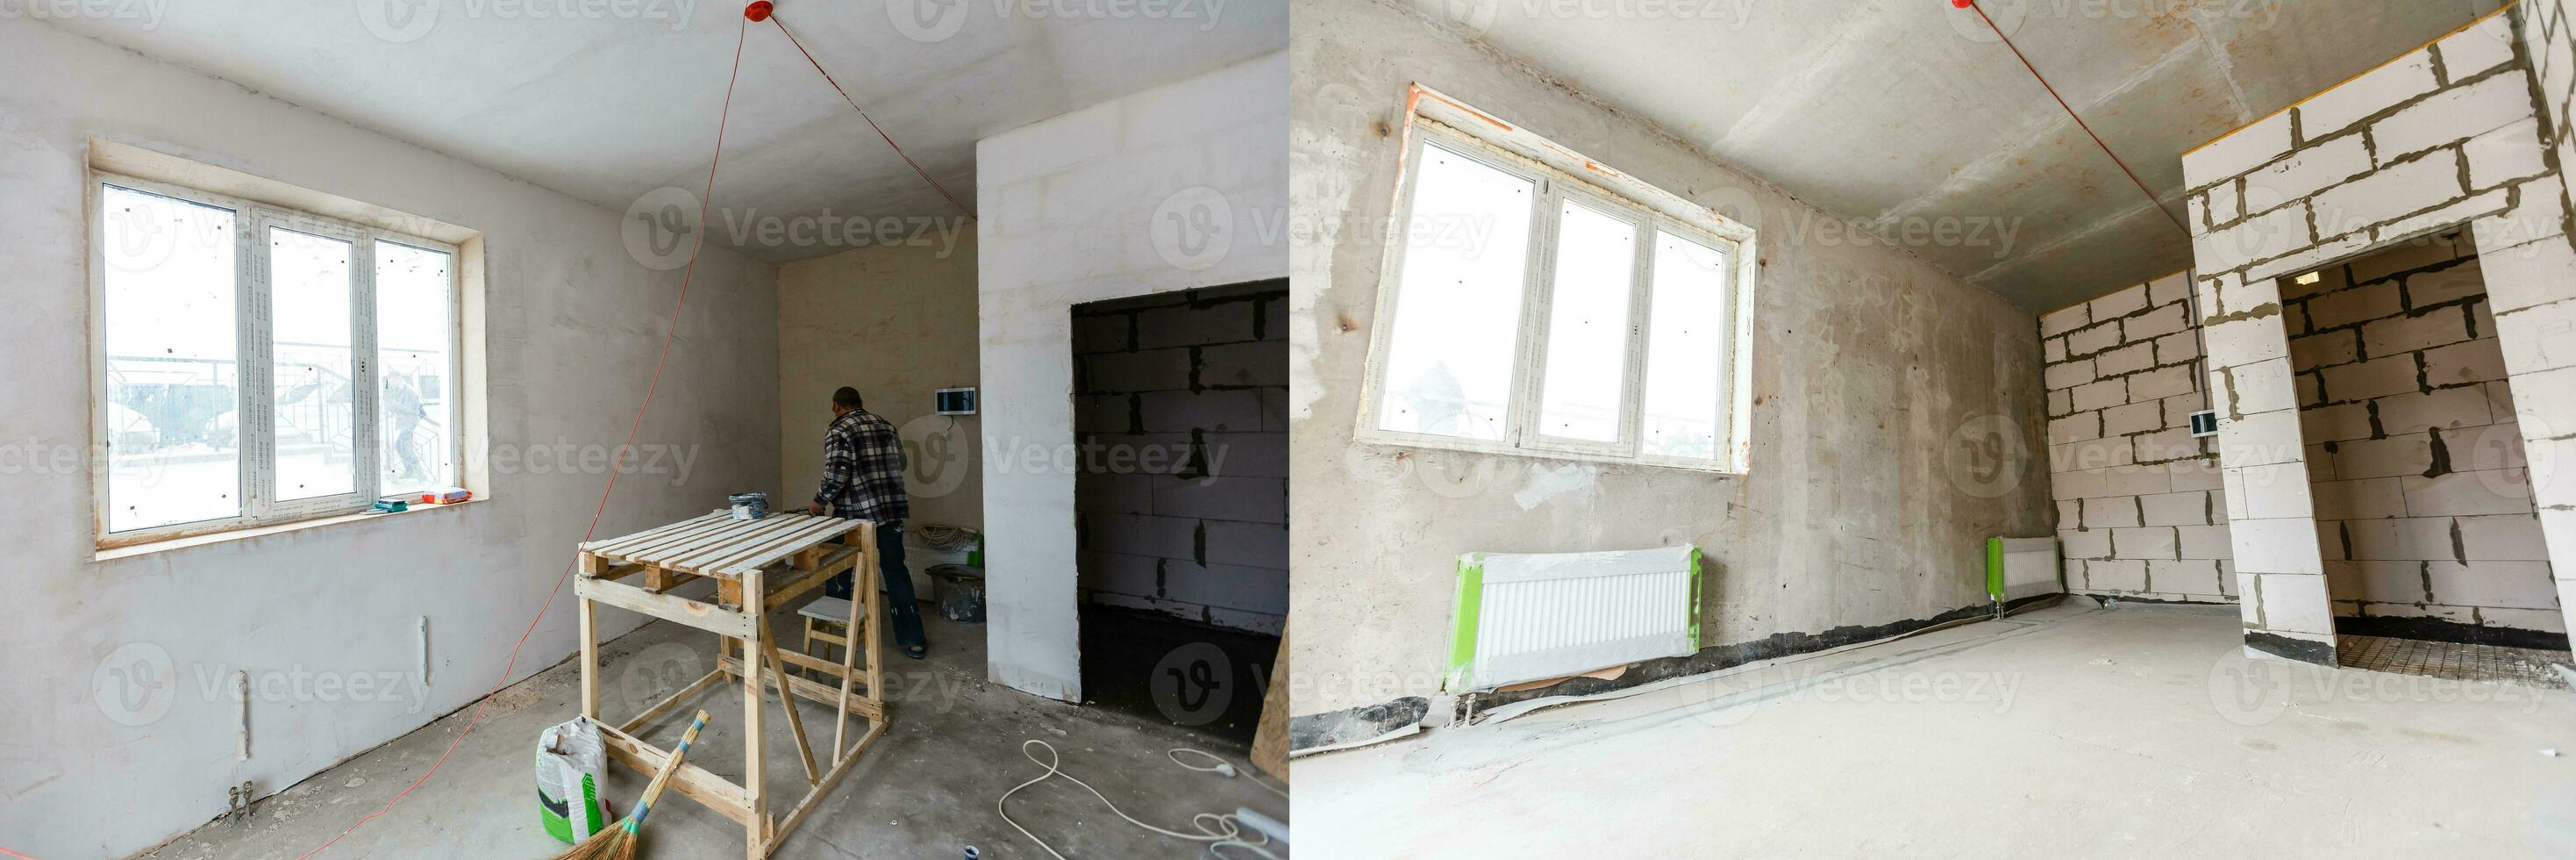 Zuhause Renovierung, leeren Zimmer Vor Sanierung oder Wiederherstellung foto